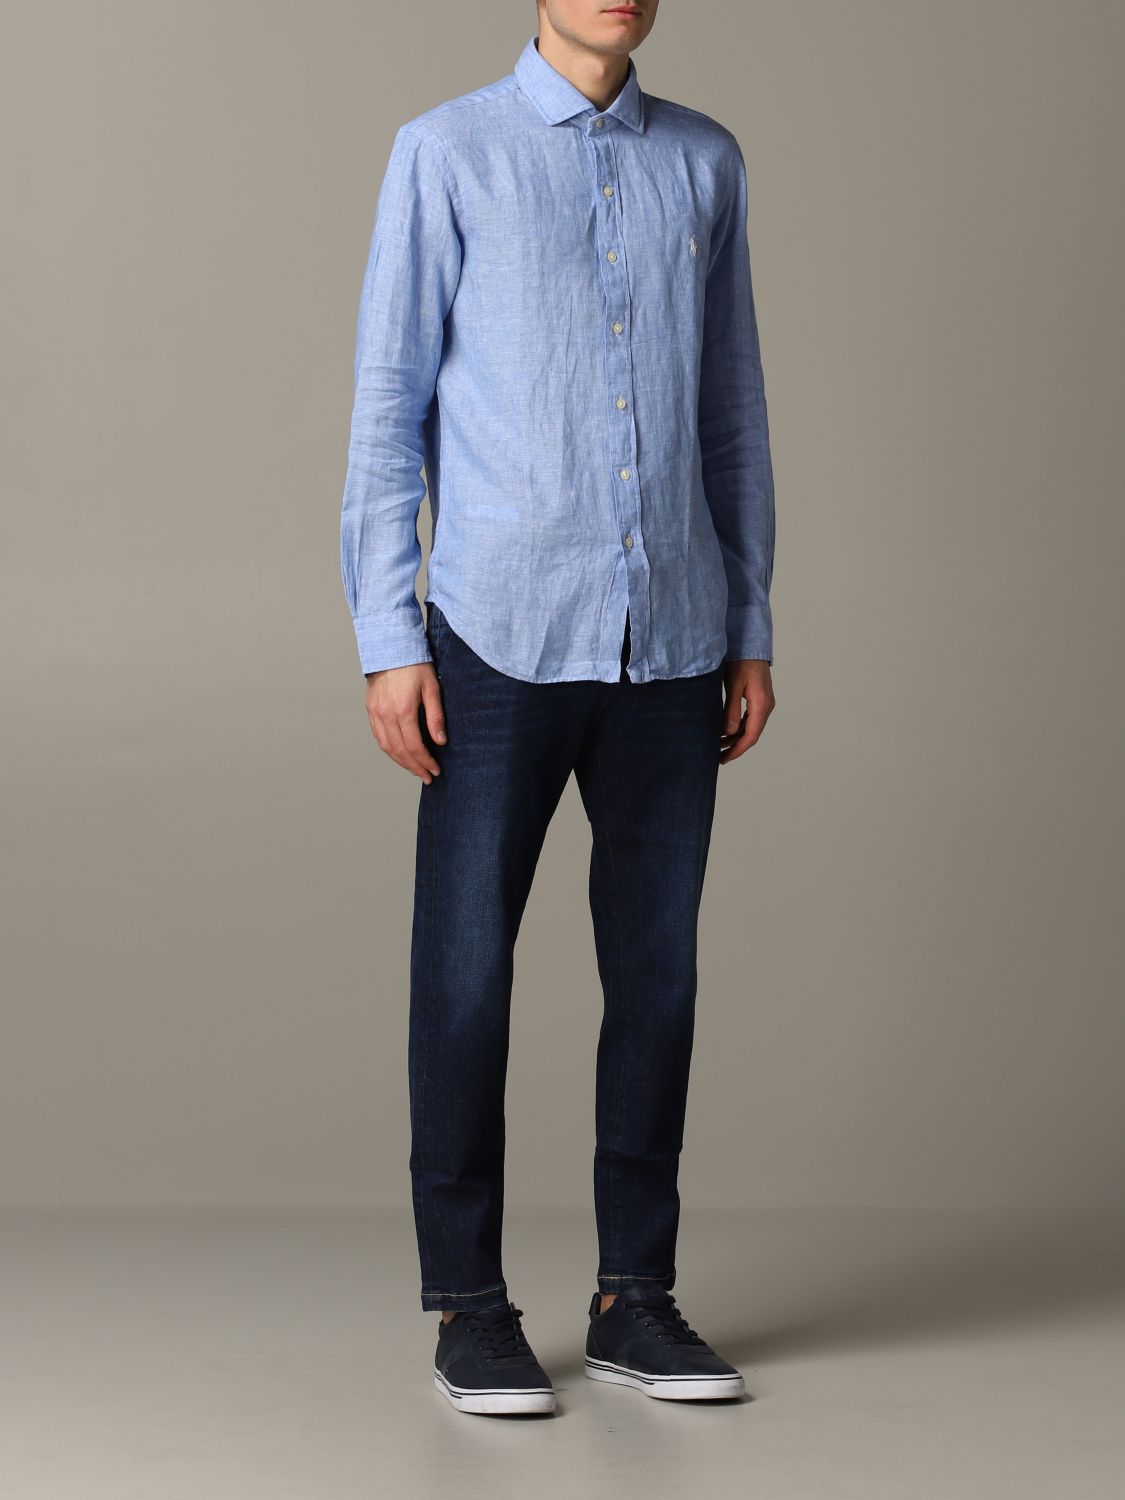 Shirt Polo Ralph Lauren: Polo Ralph Lauren shirt for men gnawed blue 2